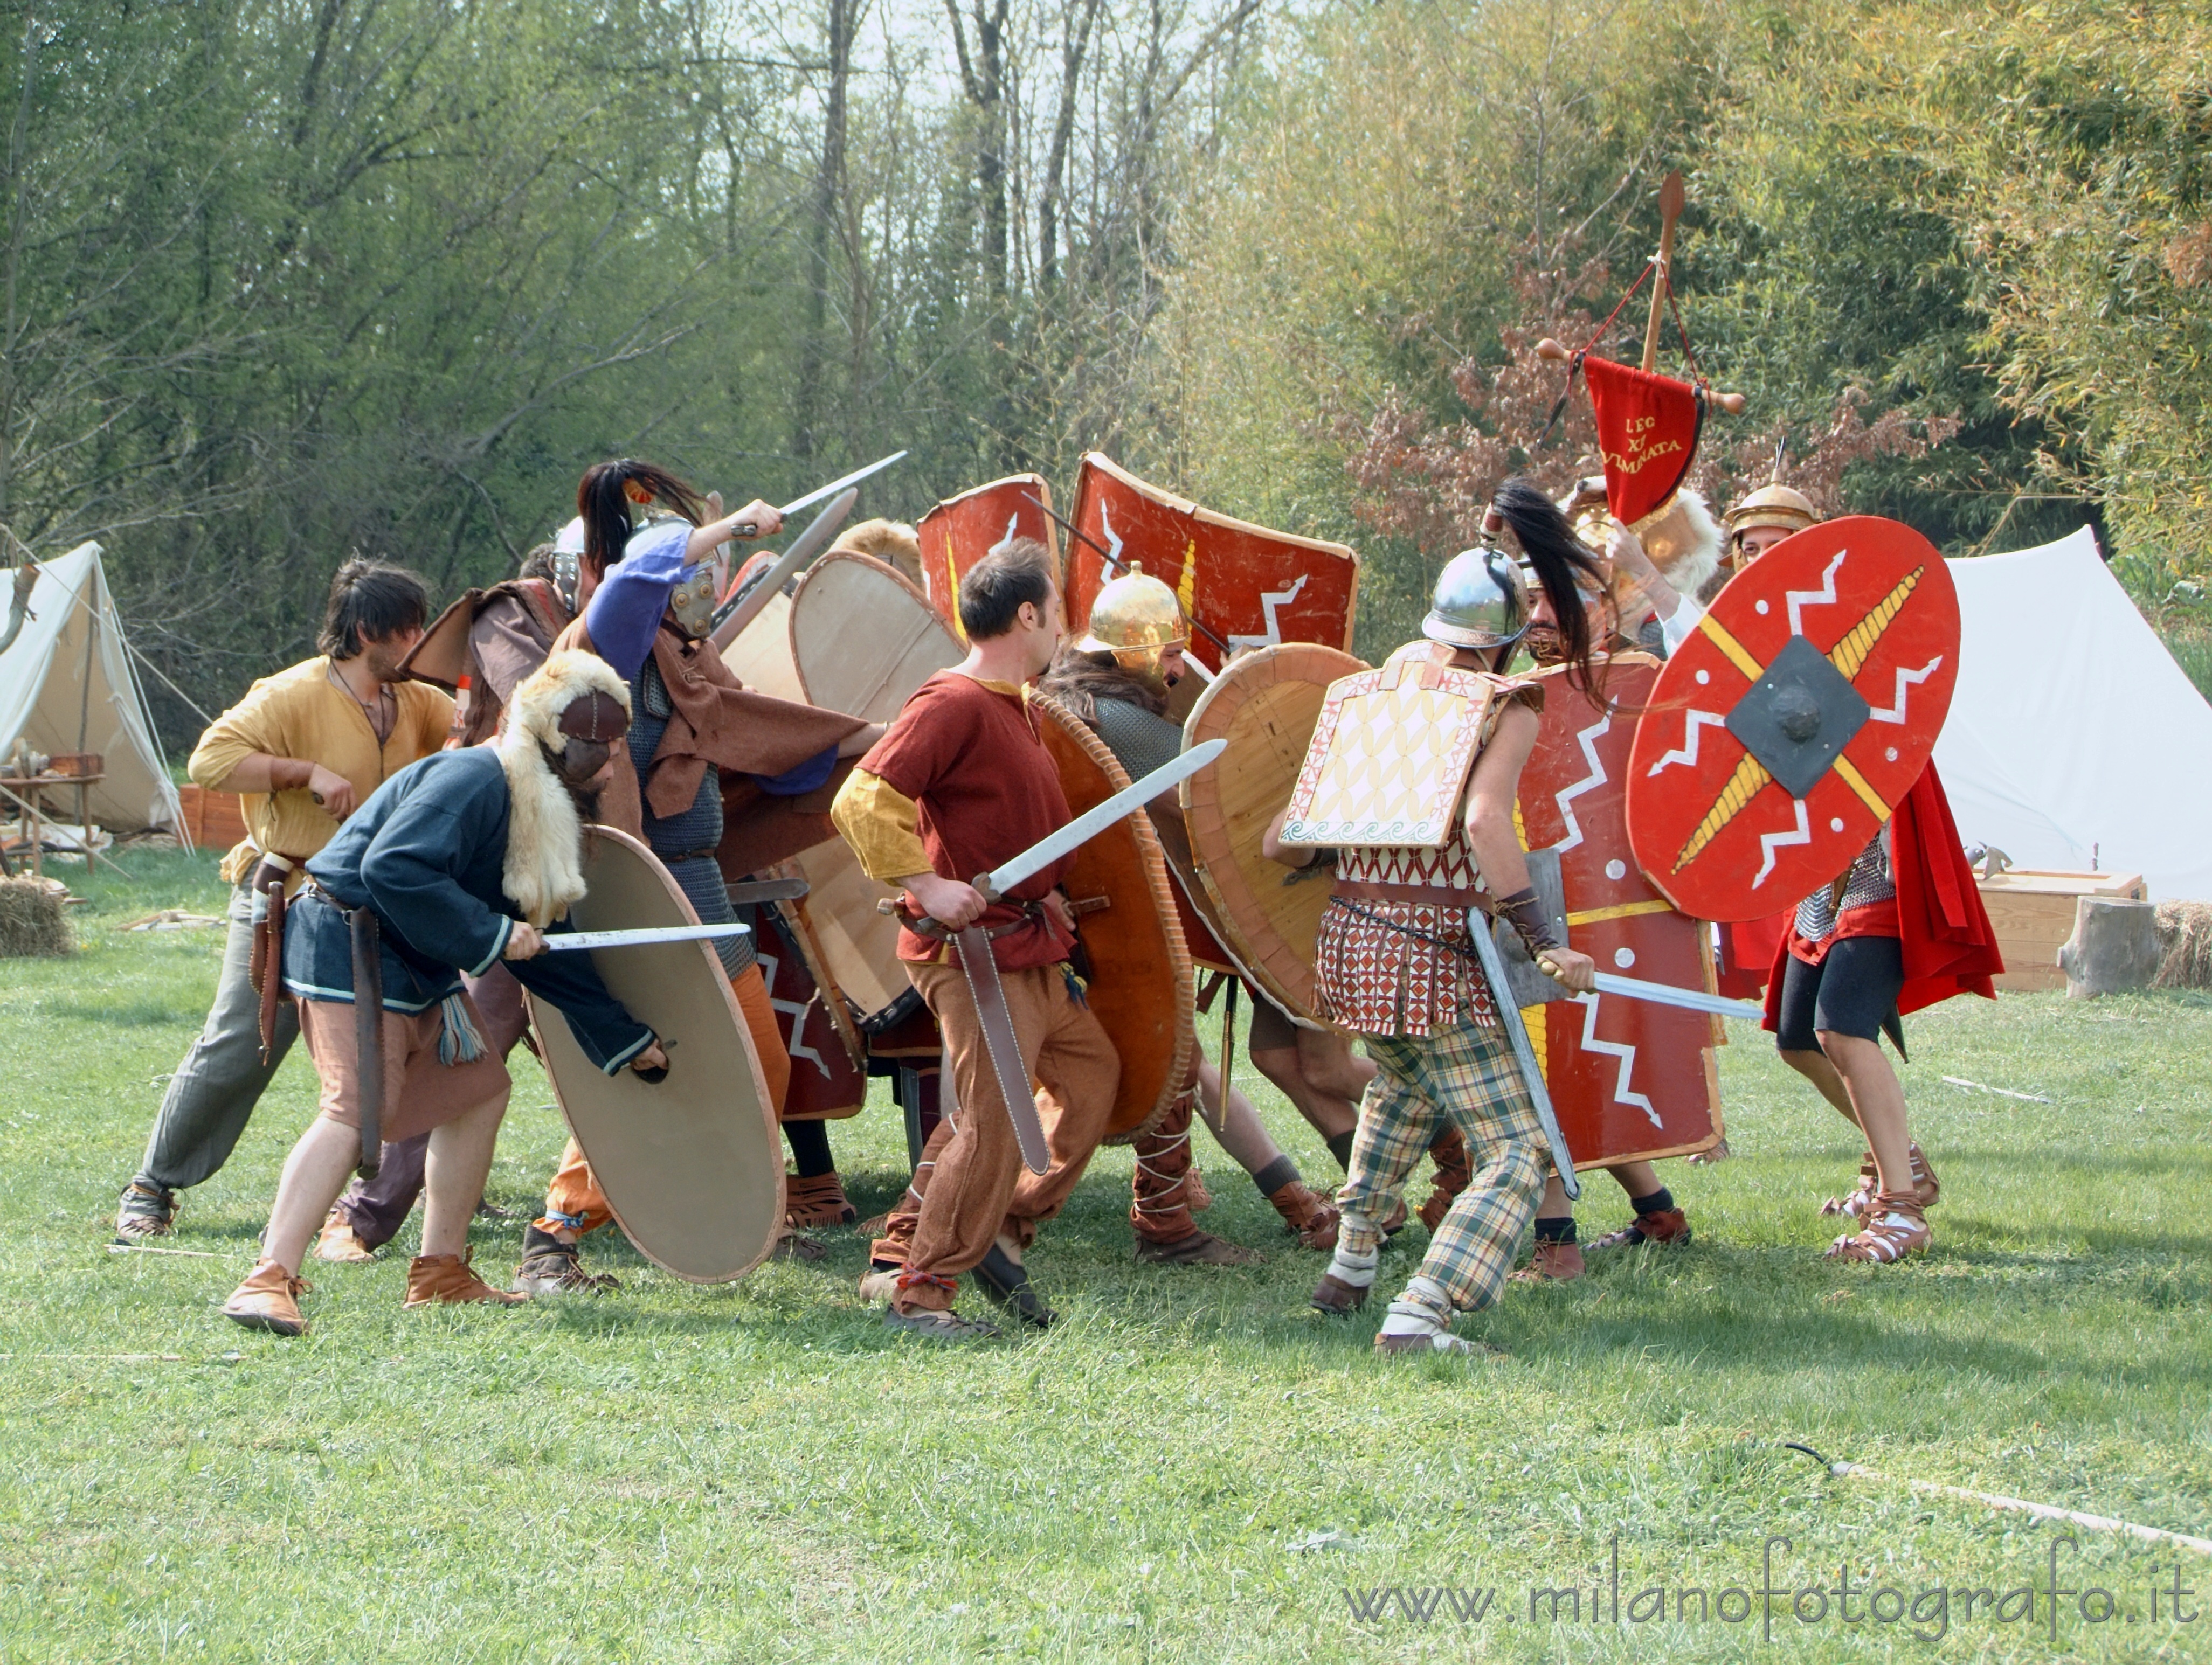 Cisliano (Milan, Italy): Battle between Celts and Romans at Storitalia - Cisliano (Milan, Italy)